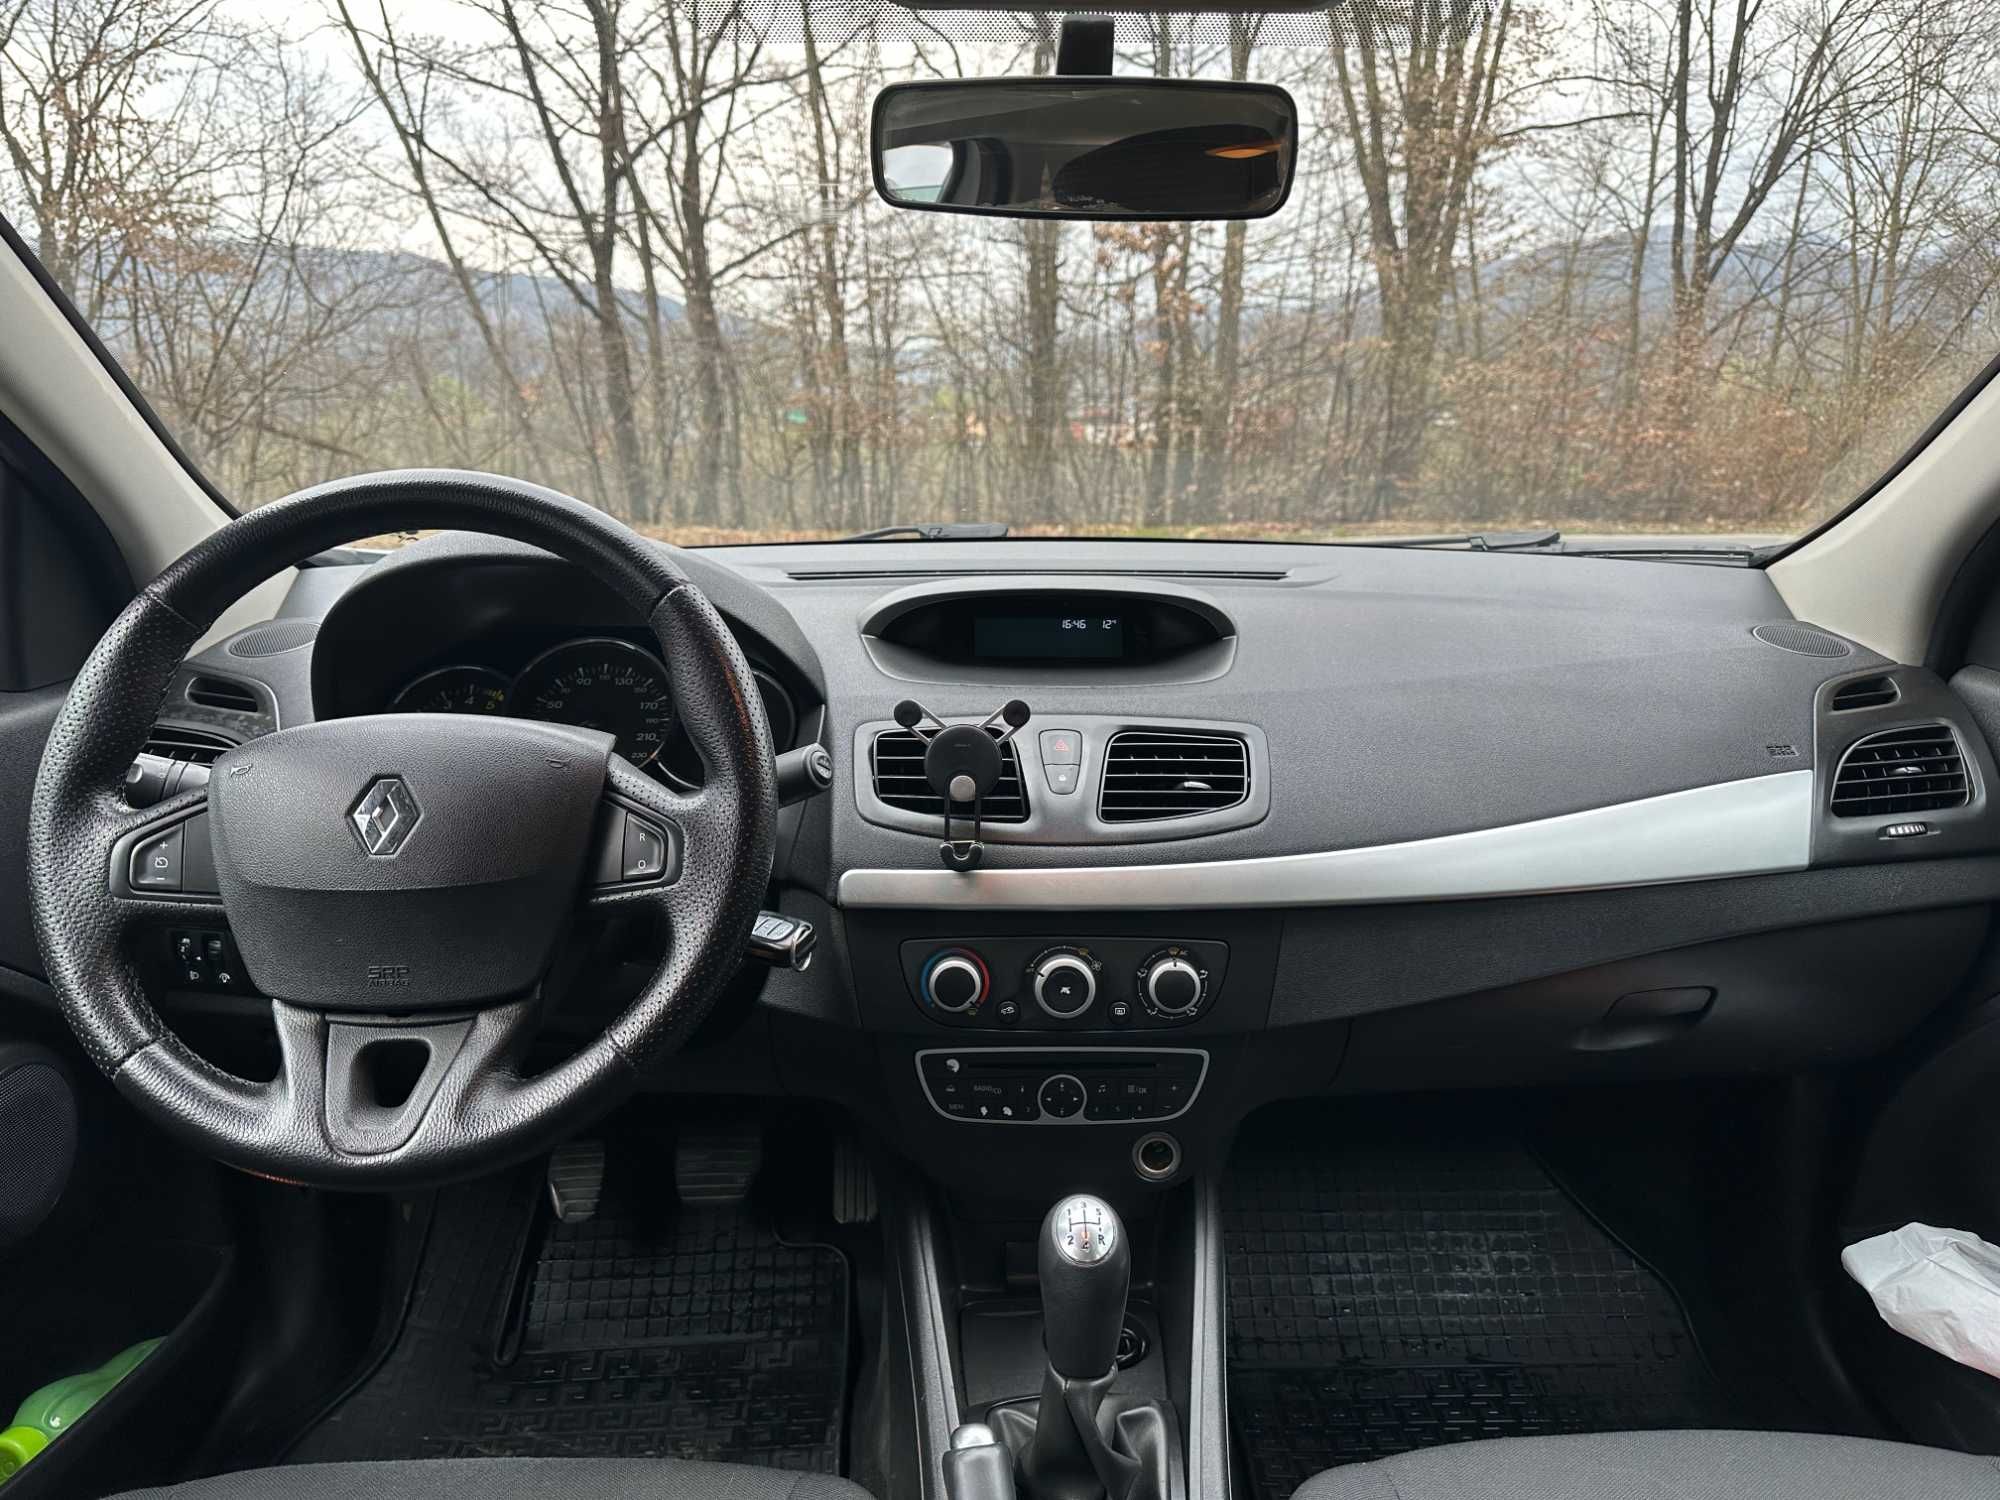 Renault Fluence 2012 (Megane III sedan) 1.5d